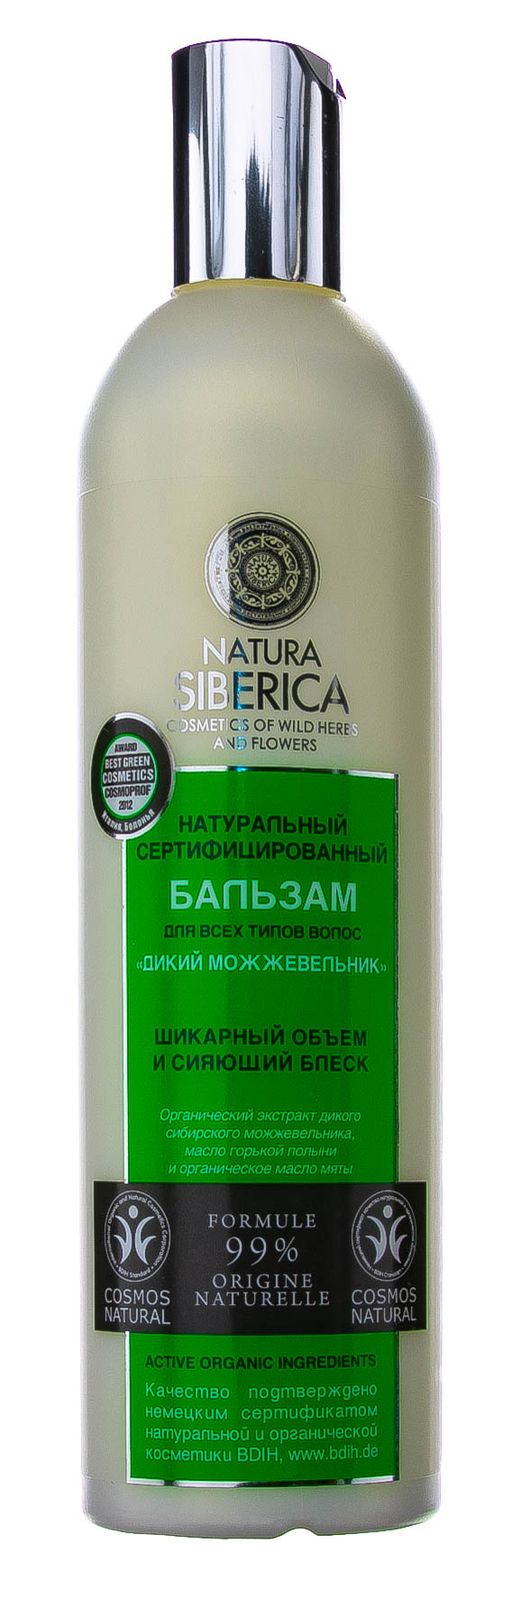 Natura Siberica Бальзам Дикий можжевельник, бальзам для волос, 400 мл, 1 шт.